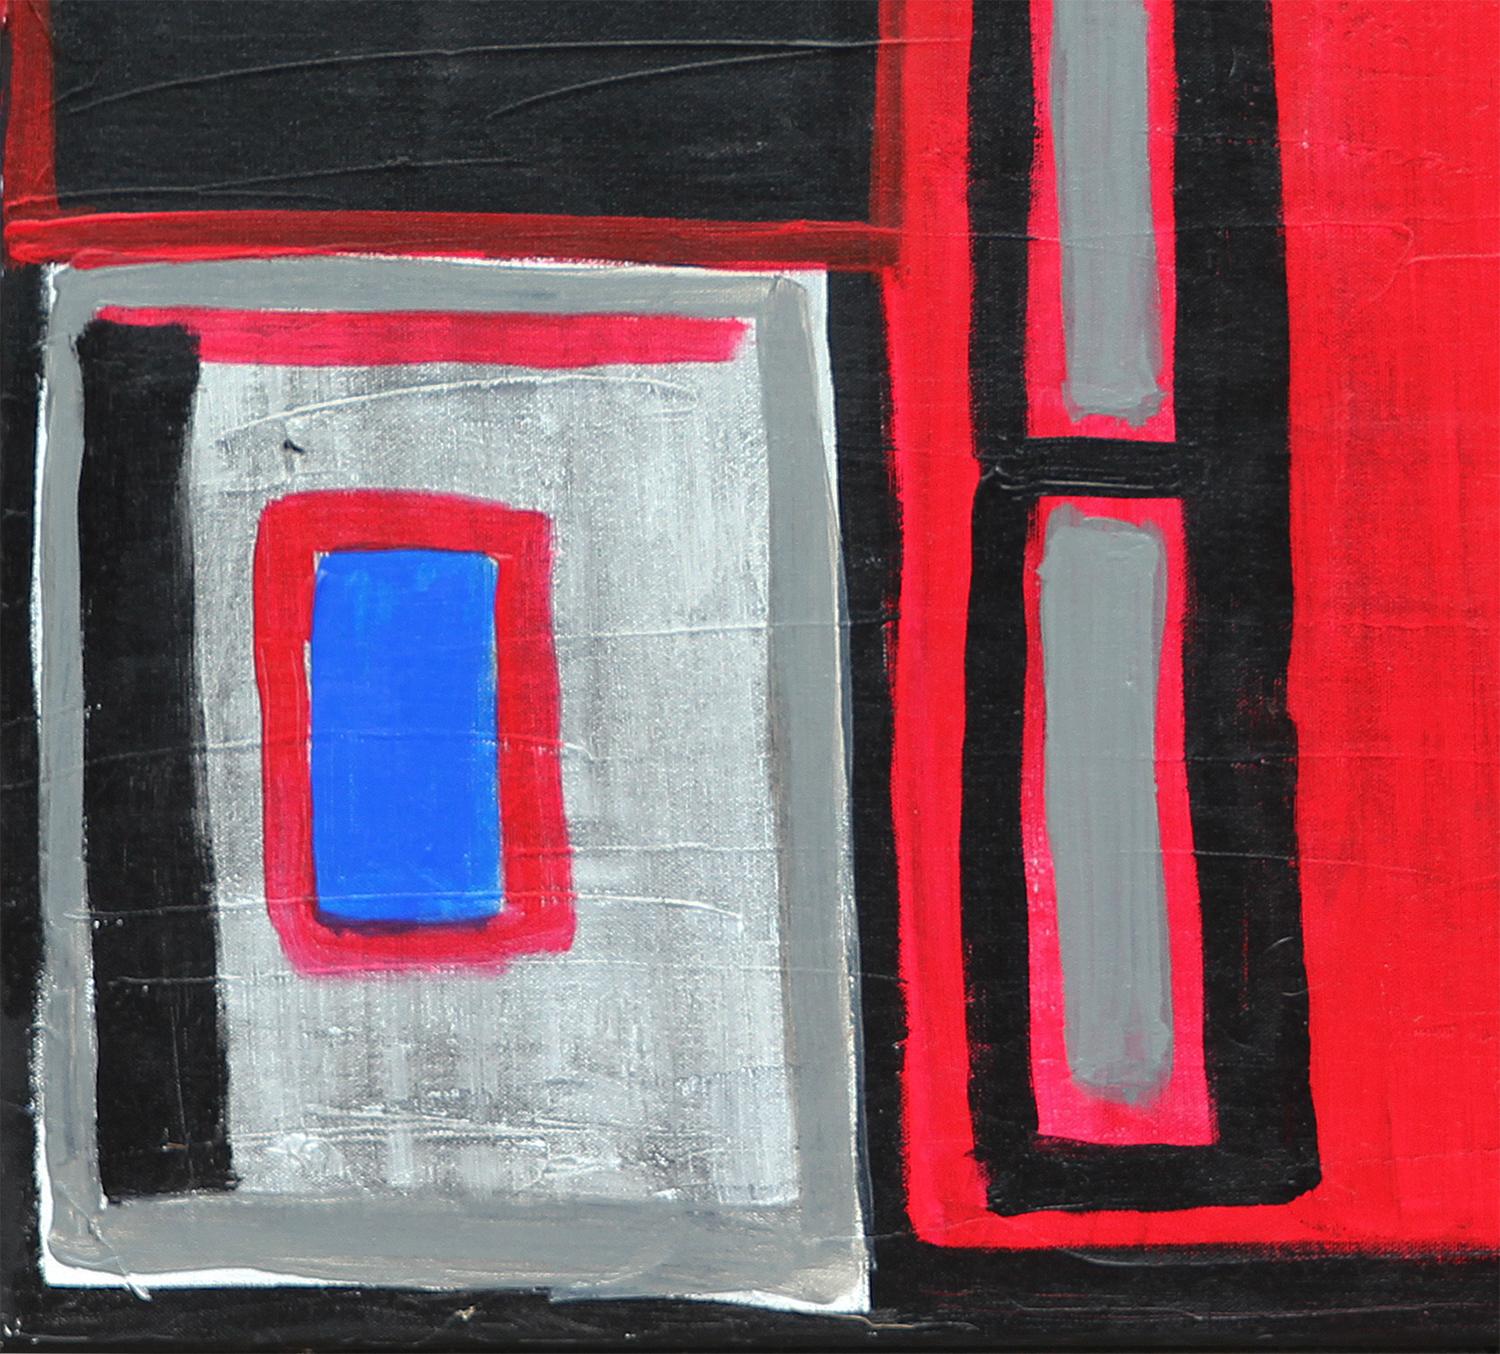 Peinture figurative abstraite rouge, bleue et noire de l'artiste texan Paul Reeves. L'œuvre présente une figure centrale avec le texte 